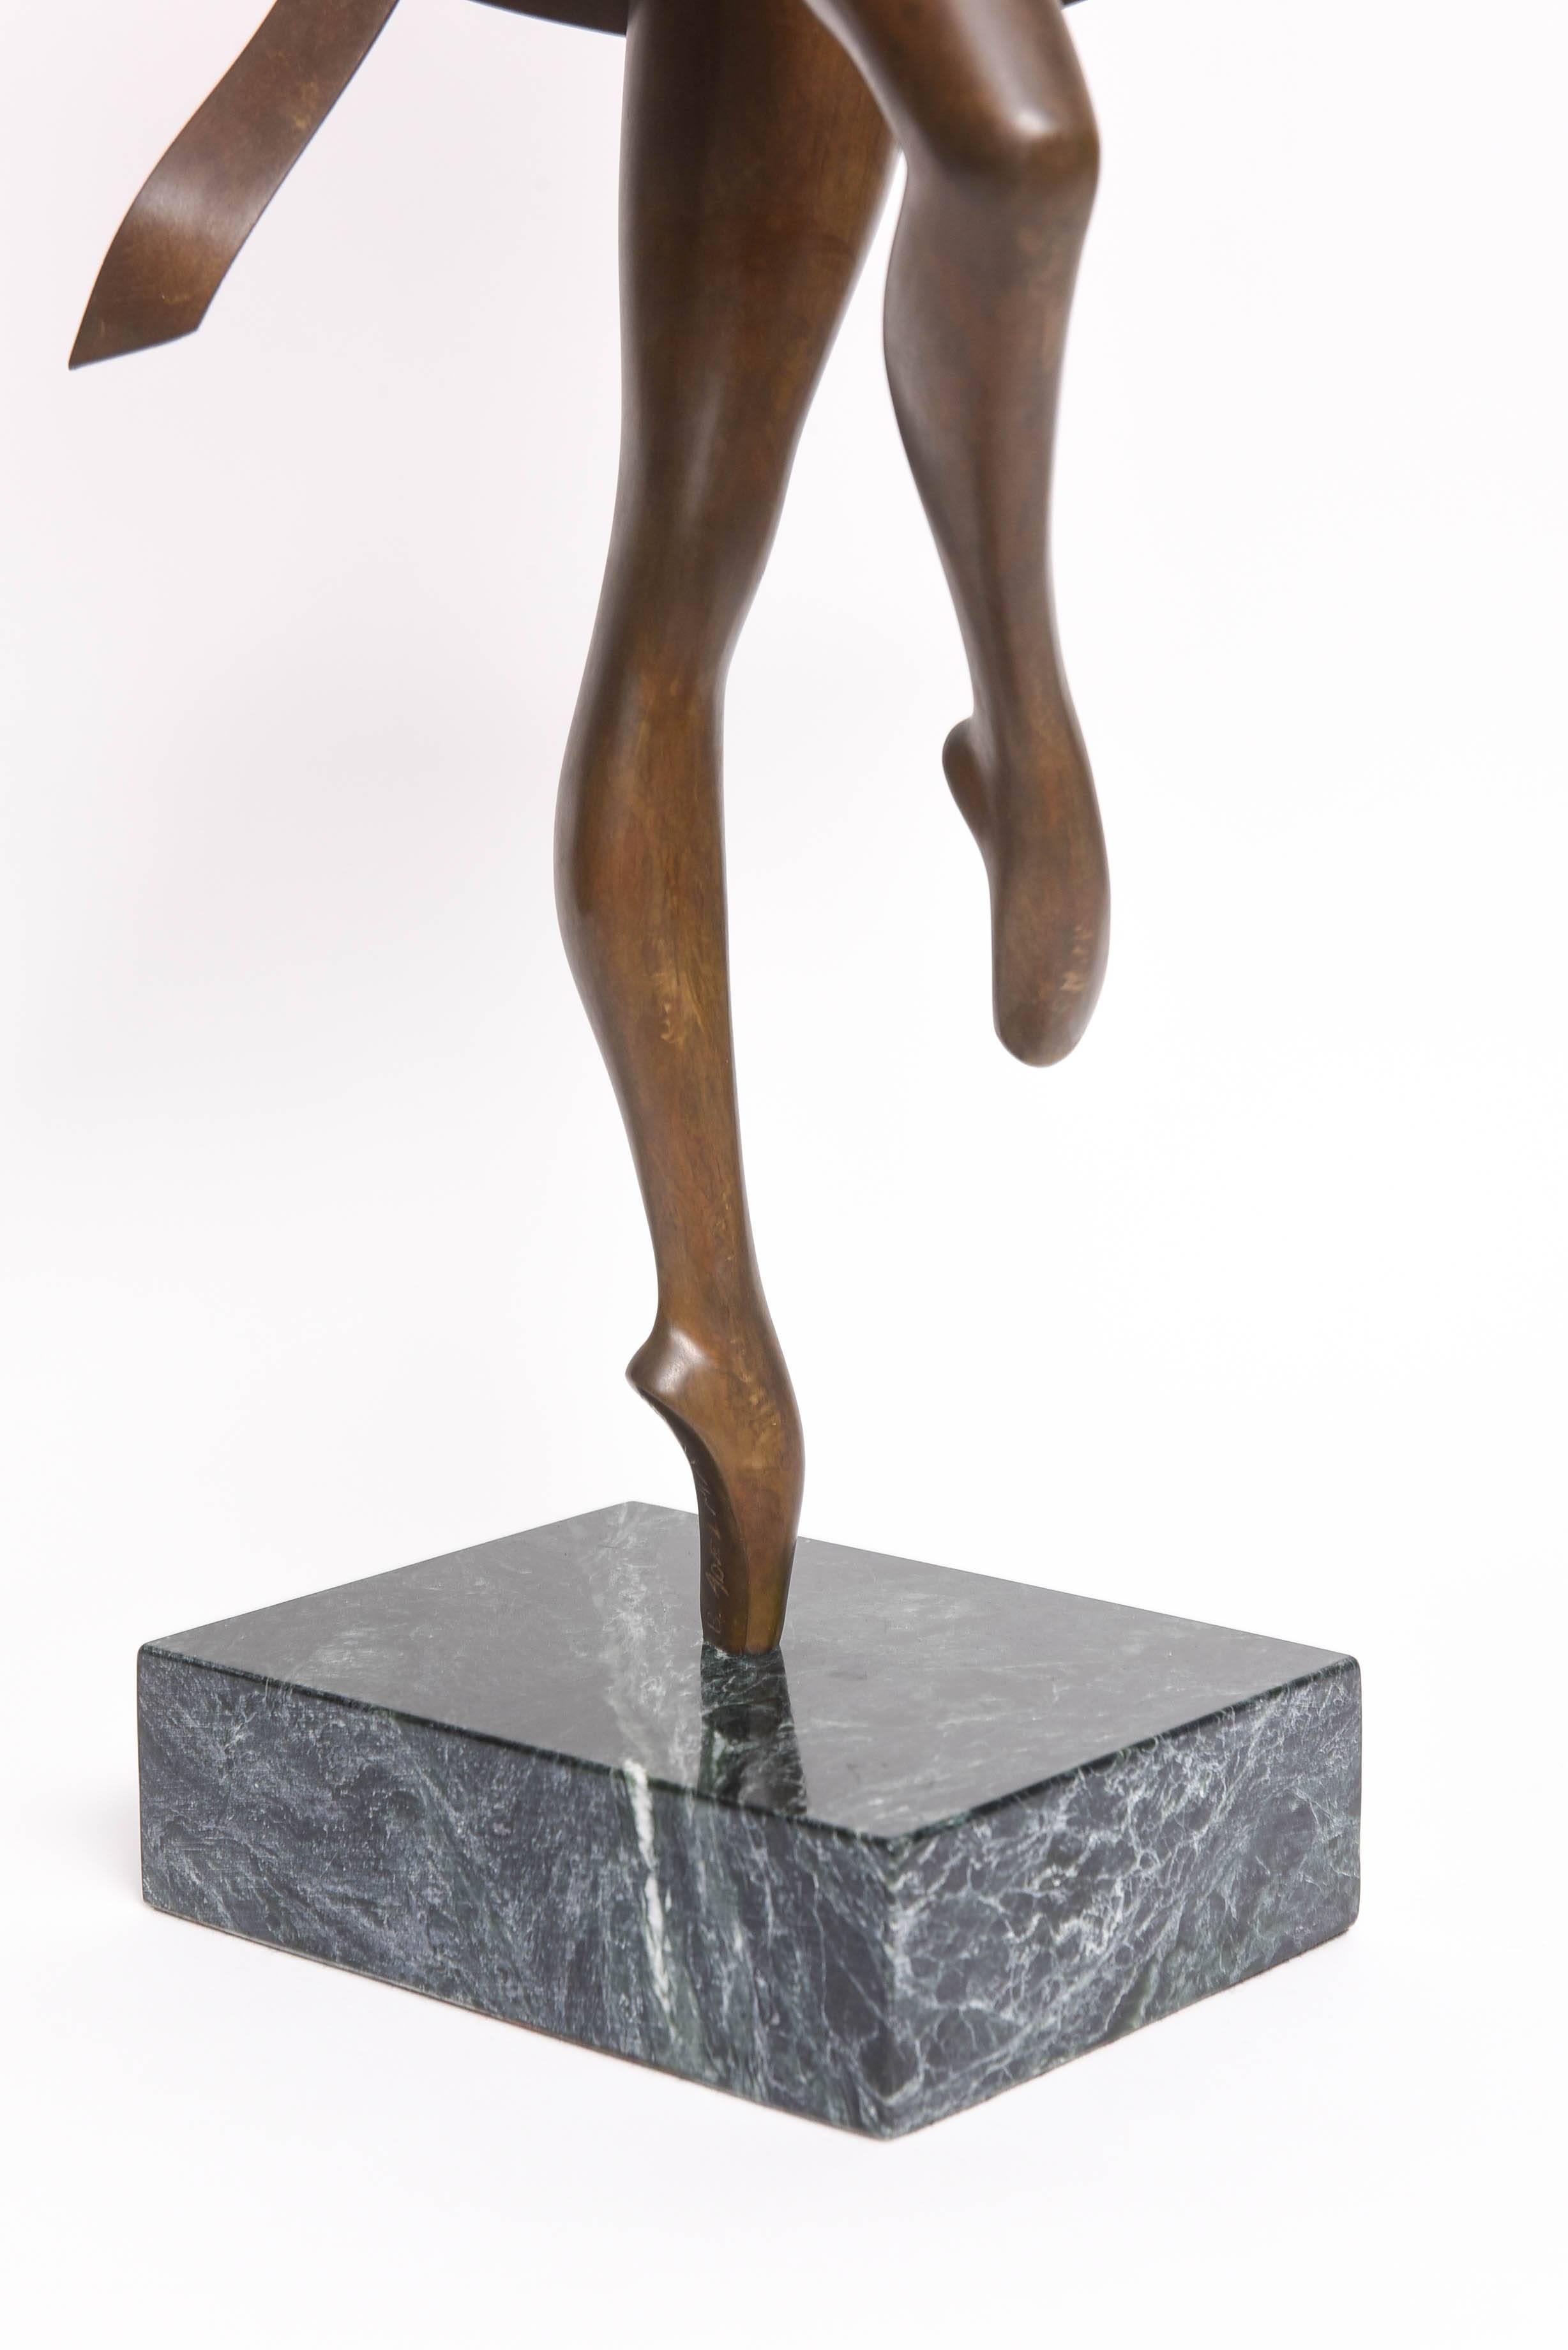 American Bunny Adelman Bronze Sculpture Ballet Dancer For Sale